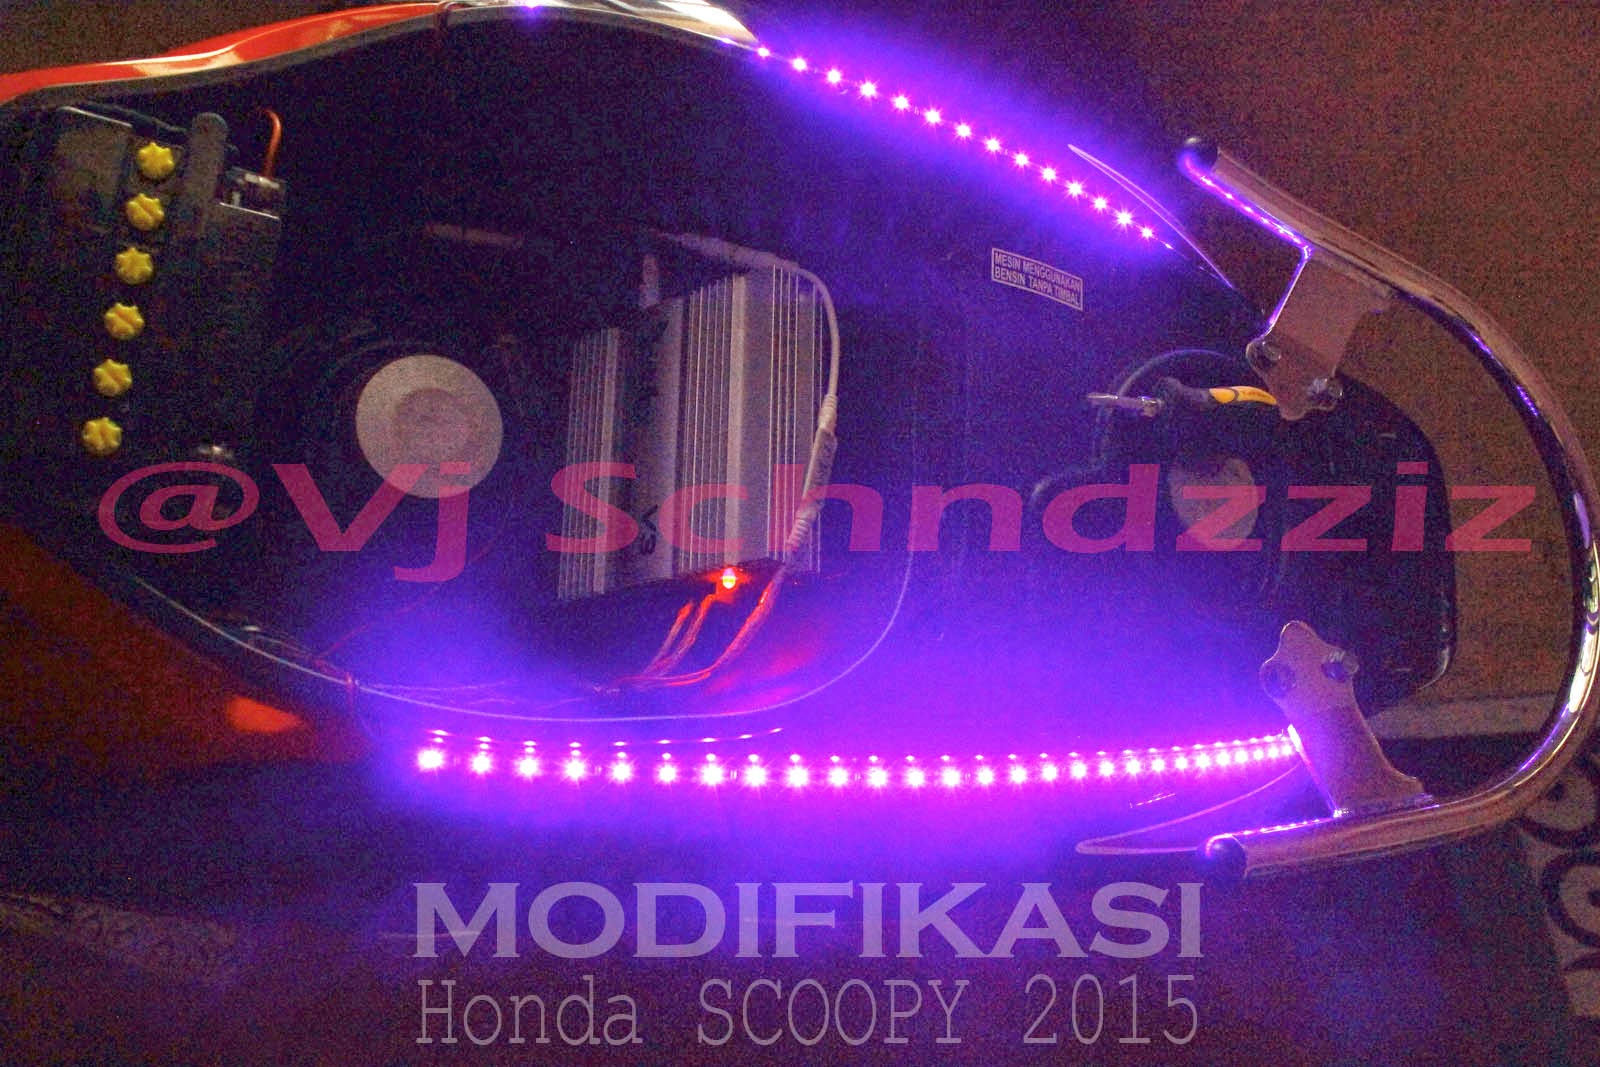 Gambar Modifikasi Motor Matic Honda Terbaru 2017